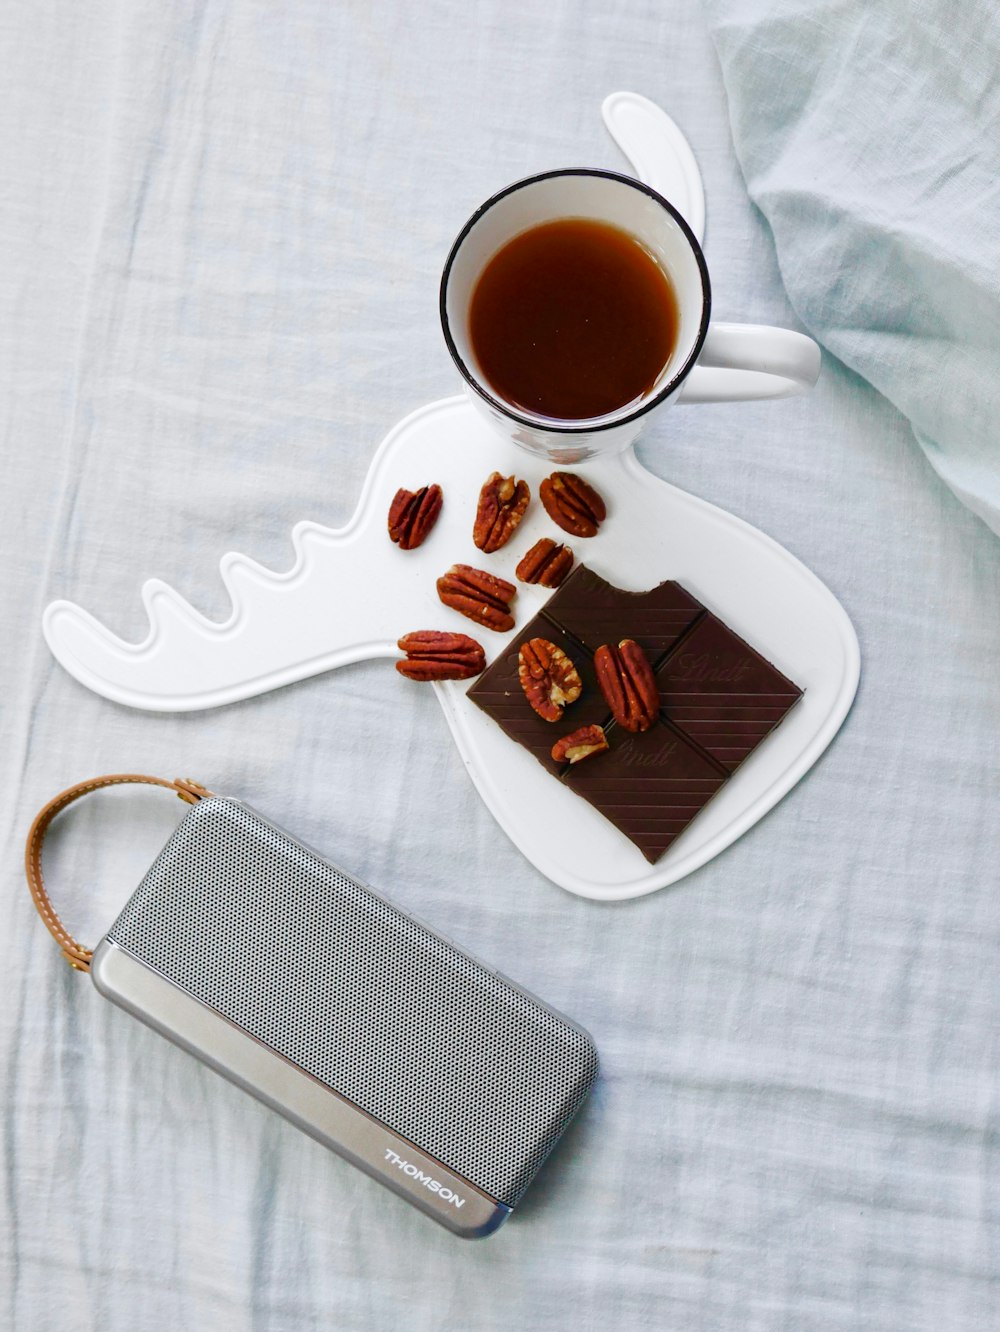 Walnüsse auf weißem Tablett neben einer Tasse Kaffee